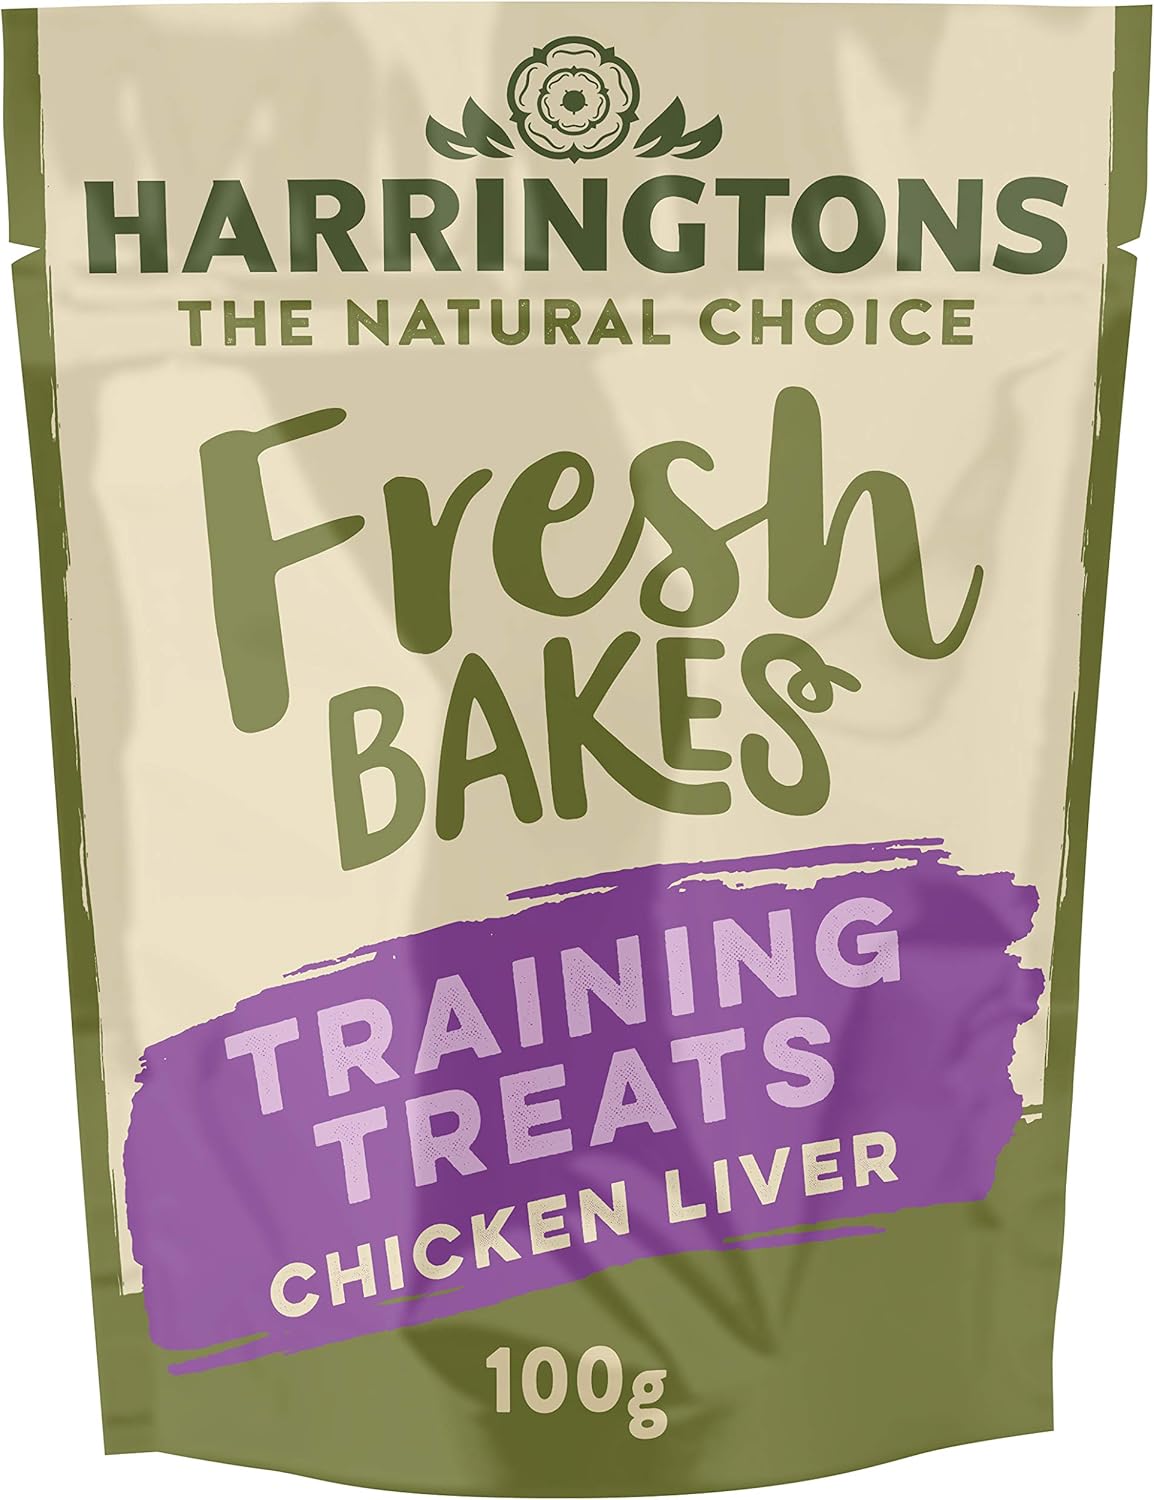 Harringtons Fresh Bakes Grain Free Chicken Liver Training Dog Treats 100g (Pack of 9) - Gently Oven Baked?HARRTT-C100